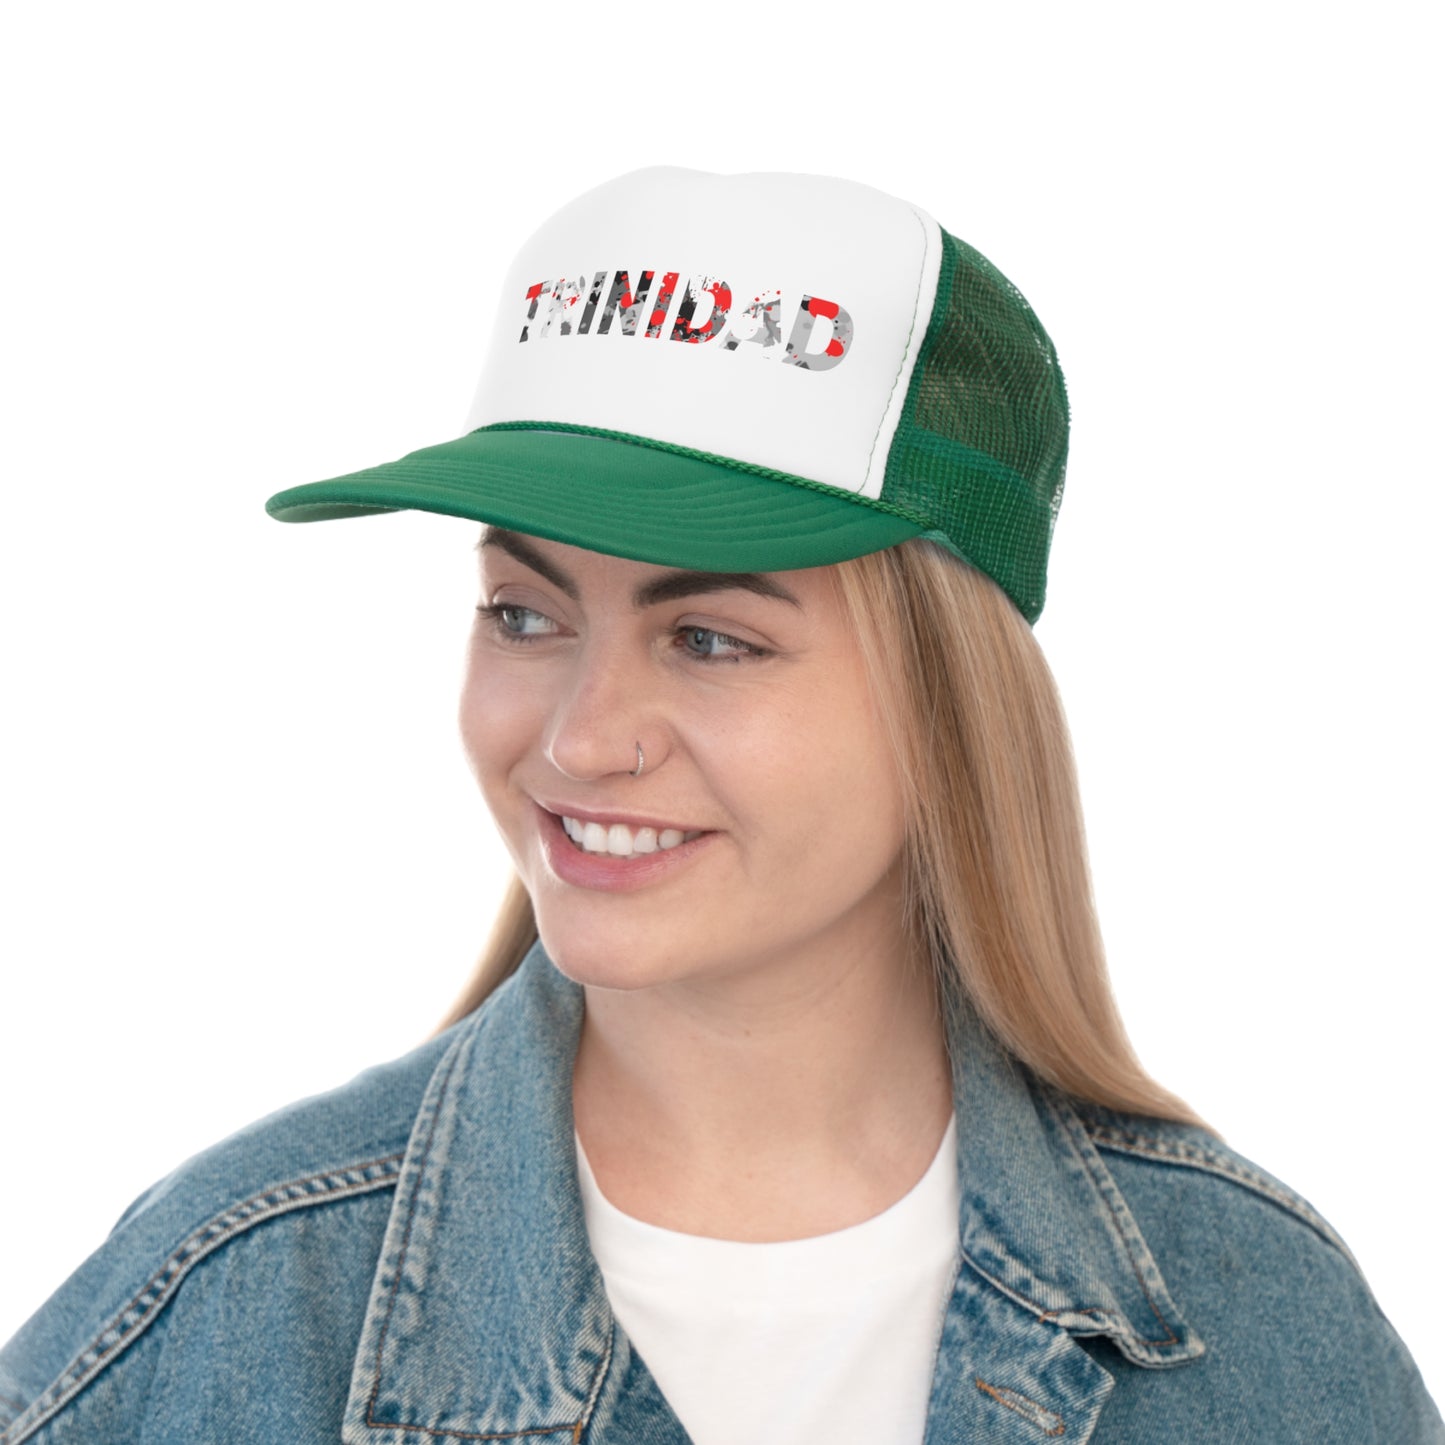 Trinidad Trucker Caps